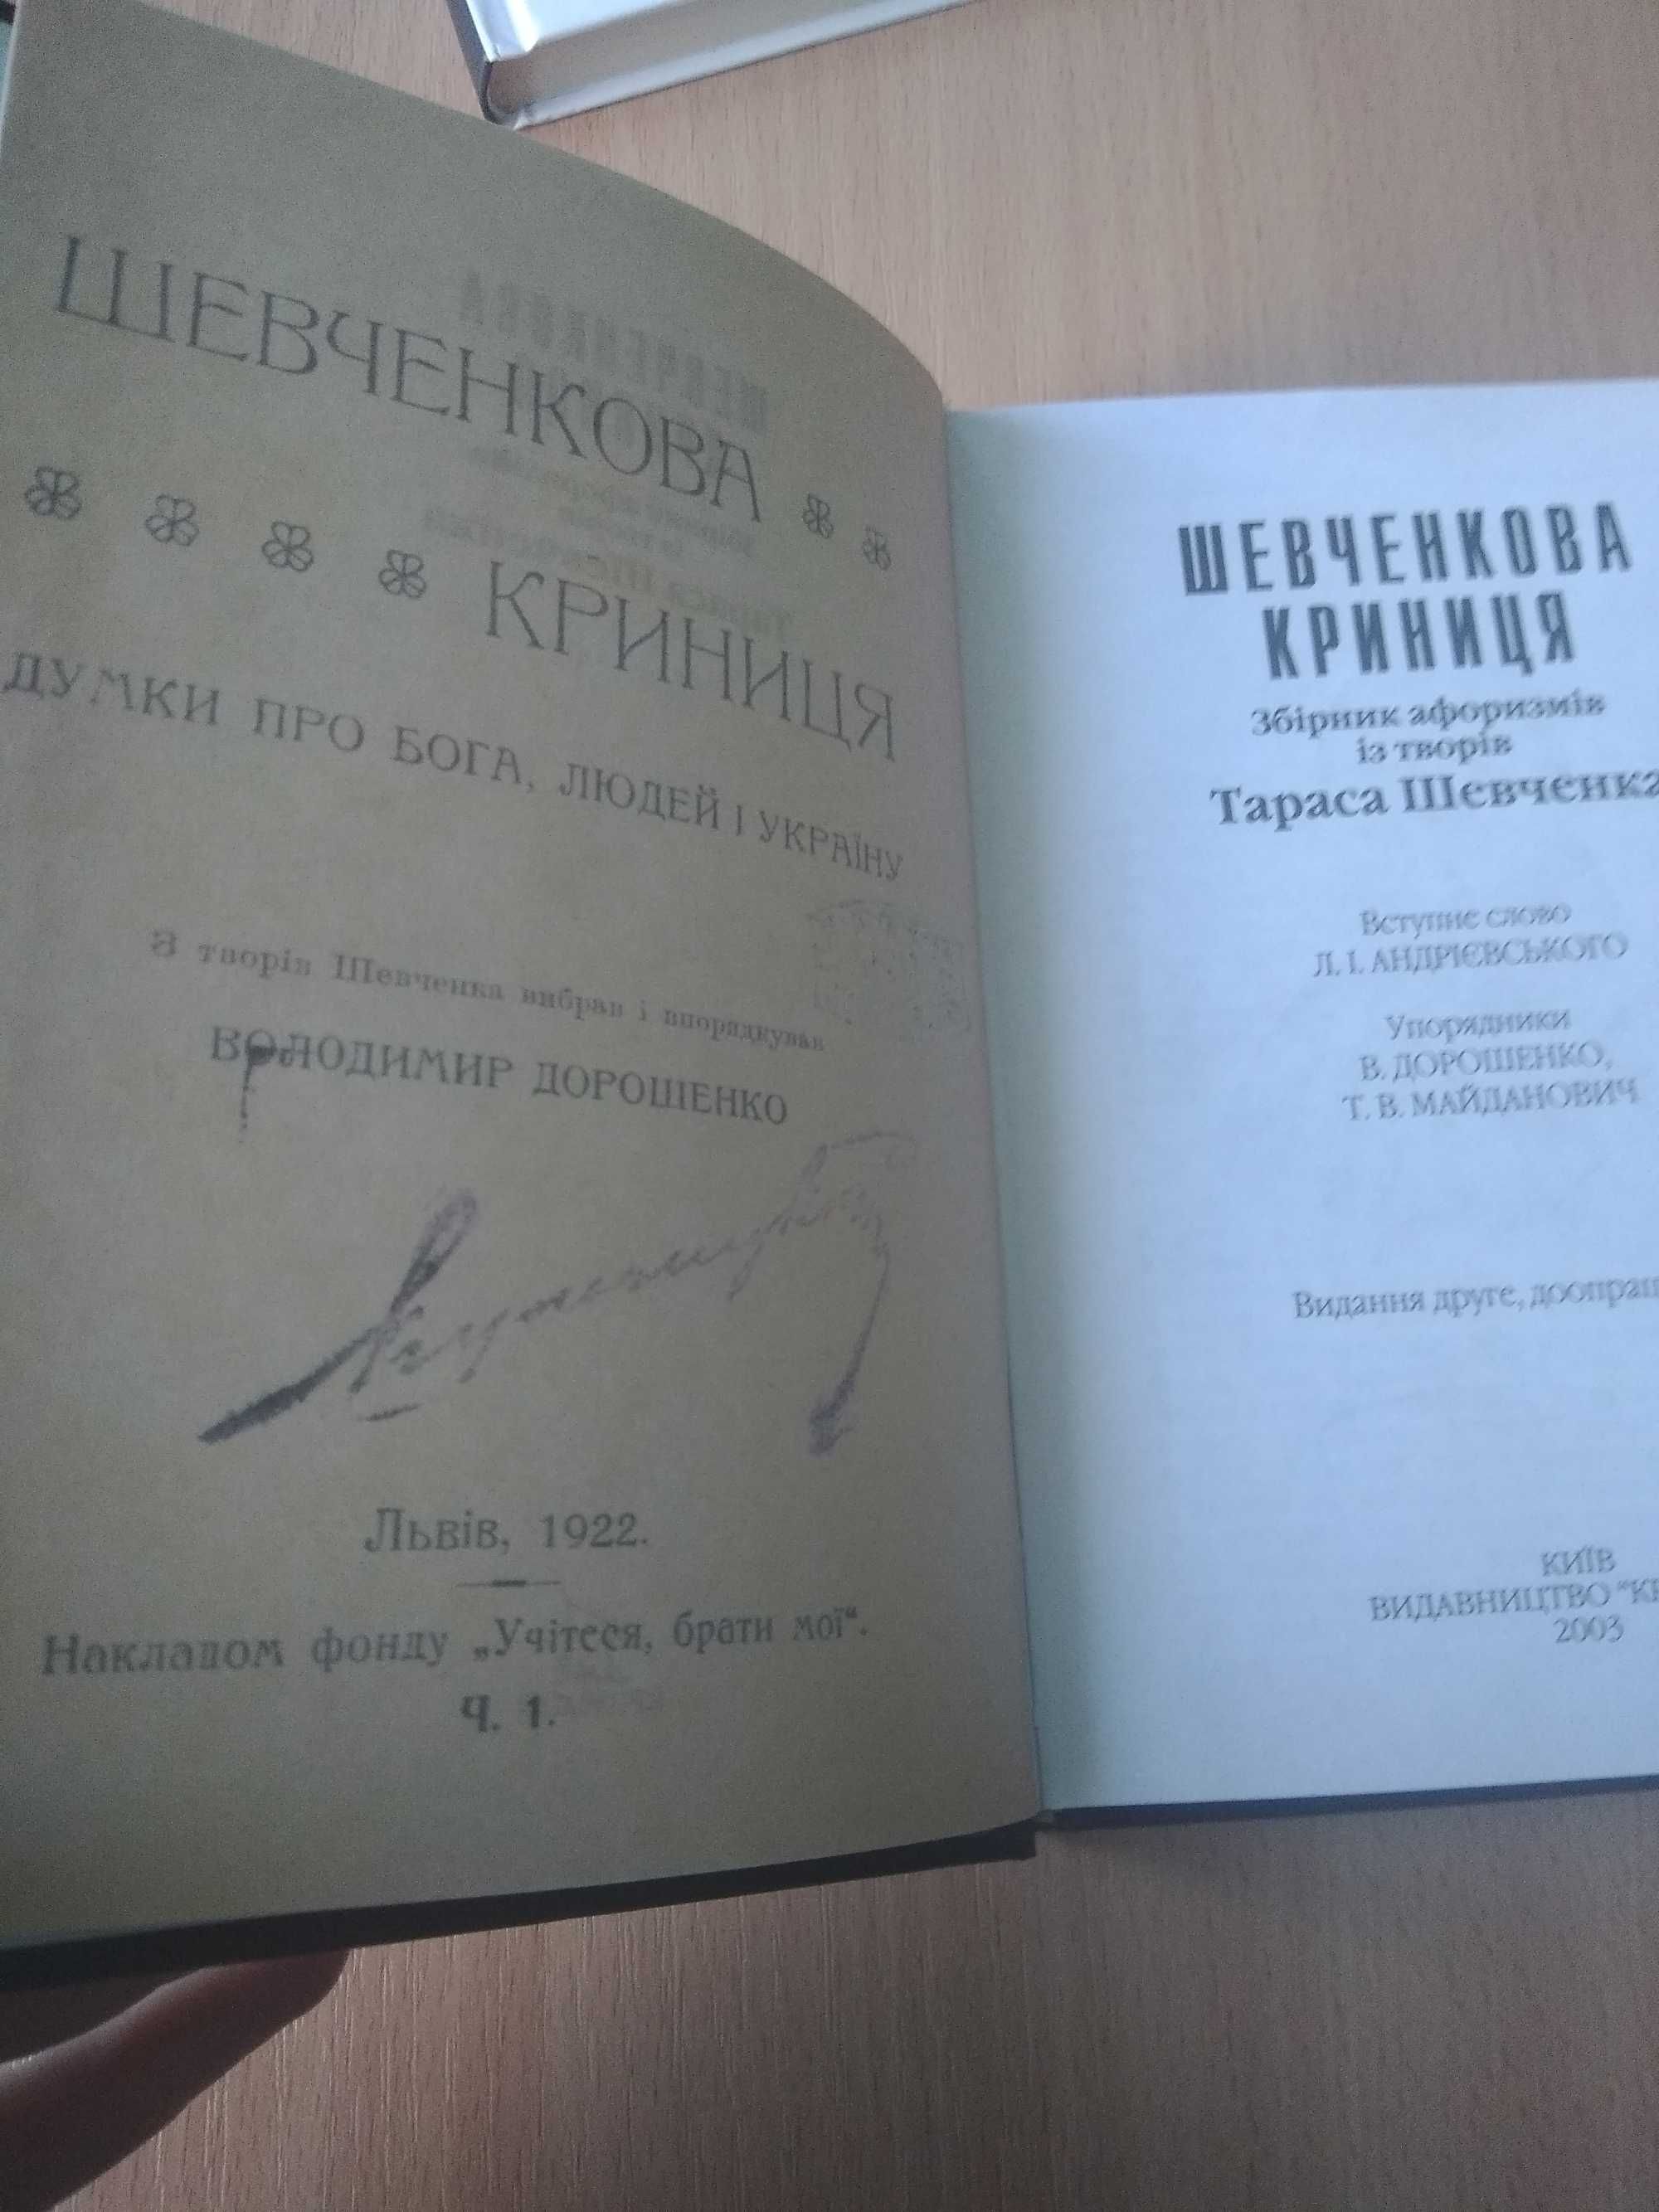 Збірник афоризмів "Шевченкова криниця" репринт 1922р.